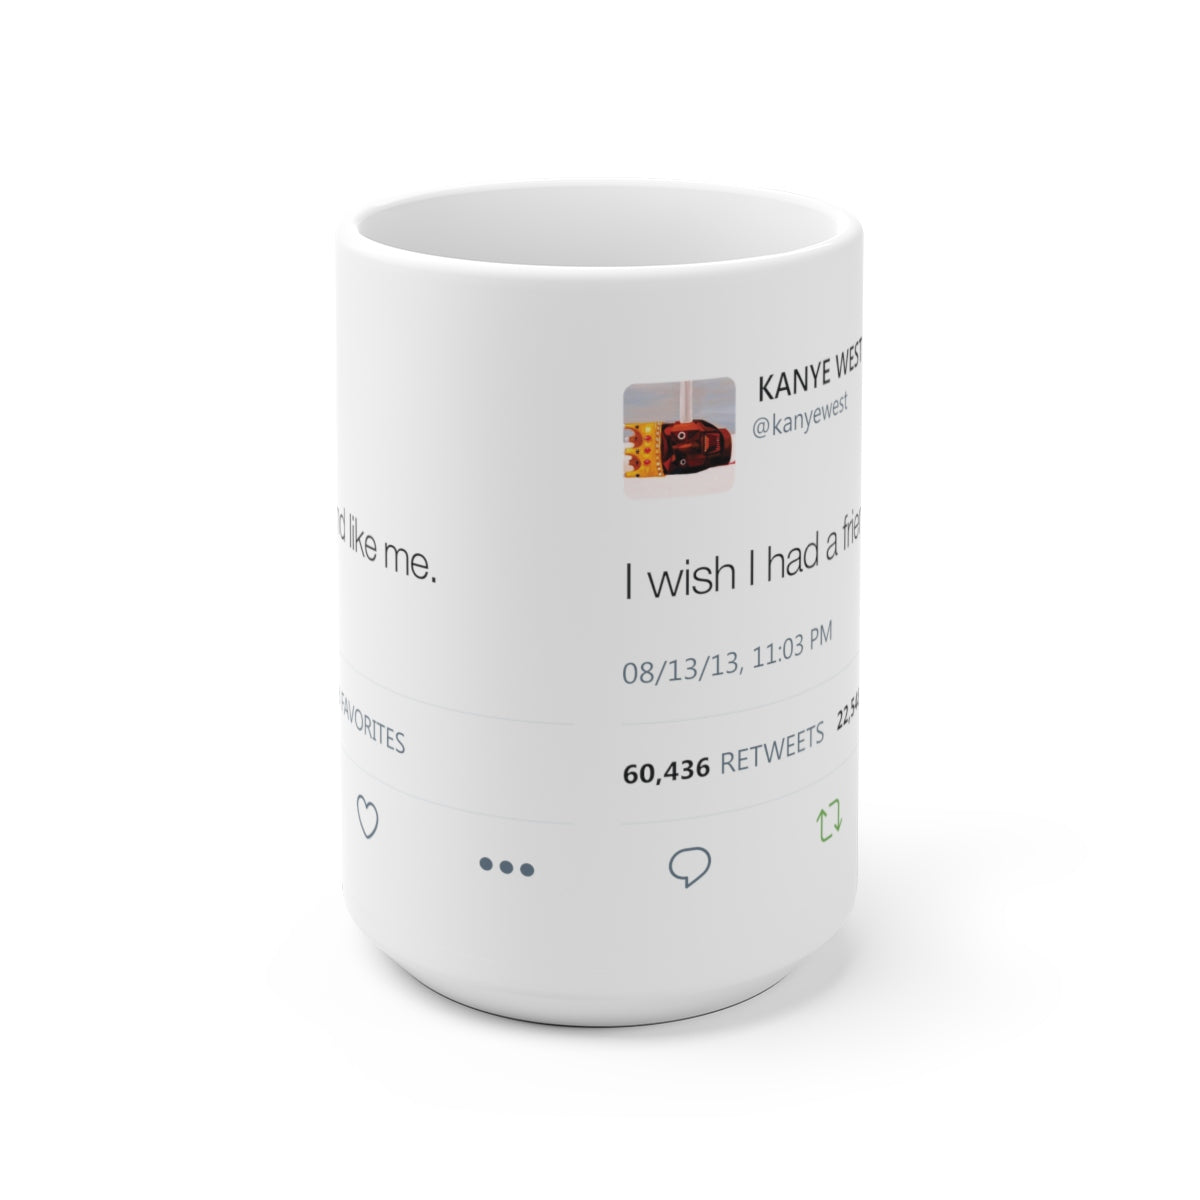 I wish I had a friend like me - Kanye West Tweet Mug-Archethype